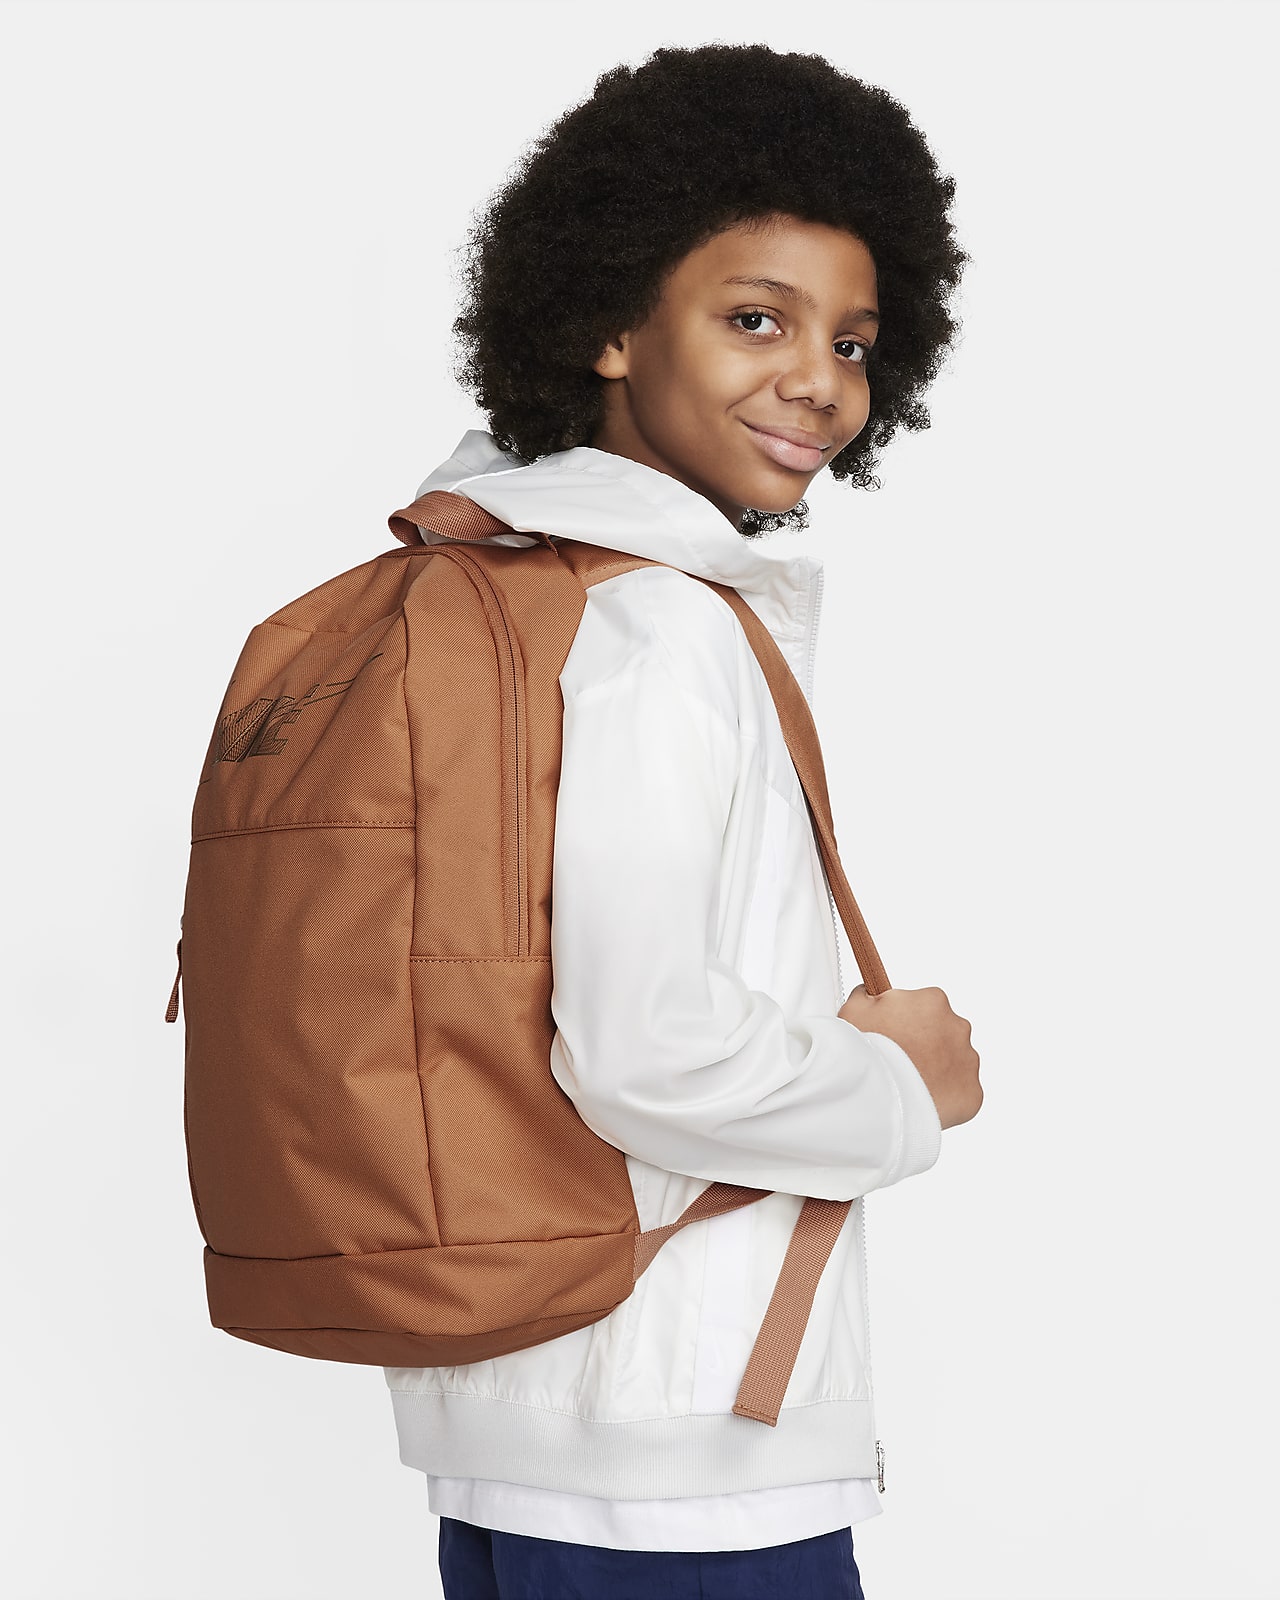 ZERUS School Bag Kids Bag Backpack Travel Bag For Boys and Girls 22 L  बैकपैक Grey - Price in India | Flipkart.com